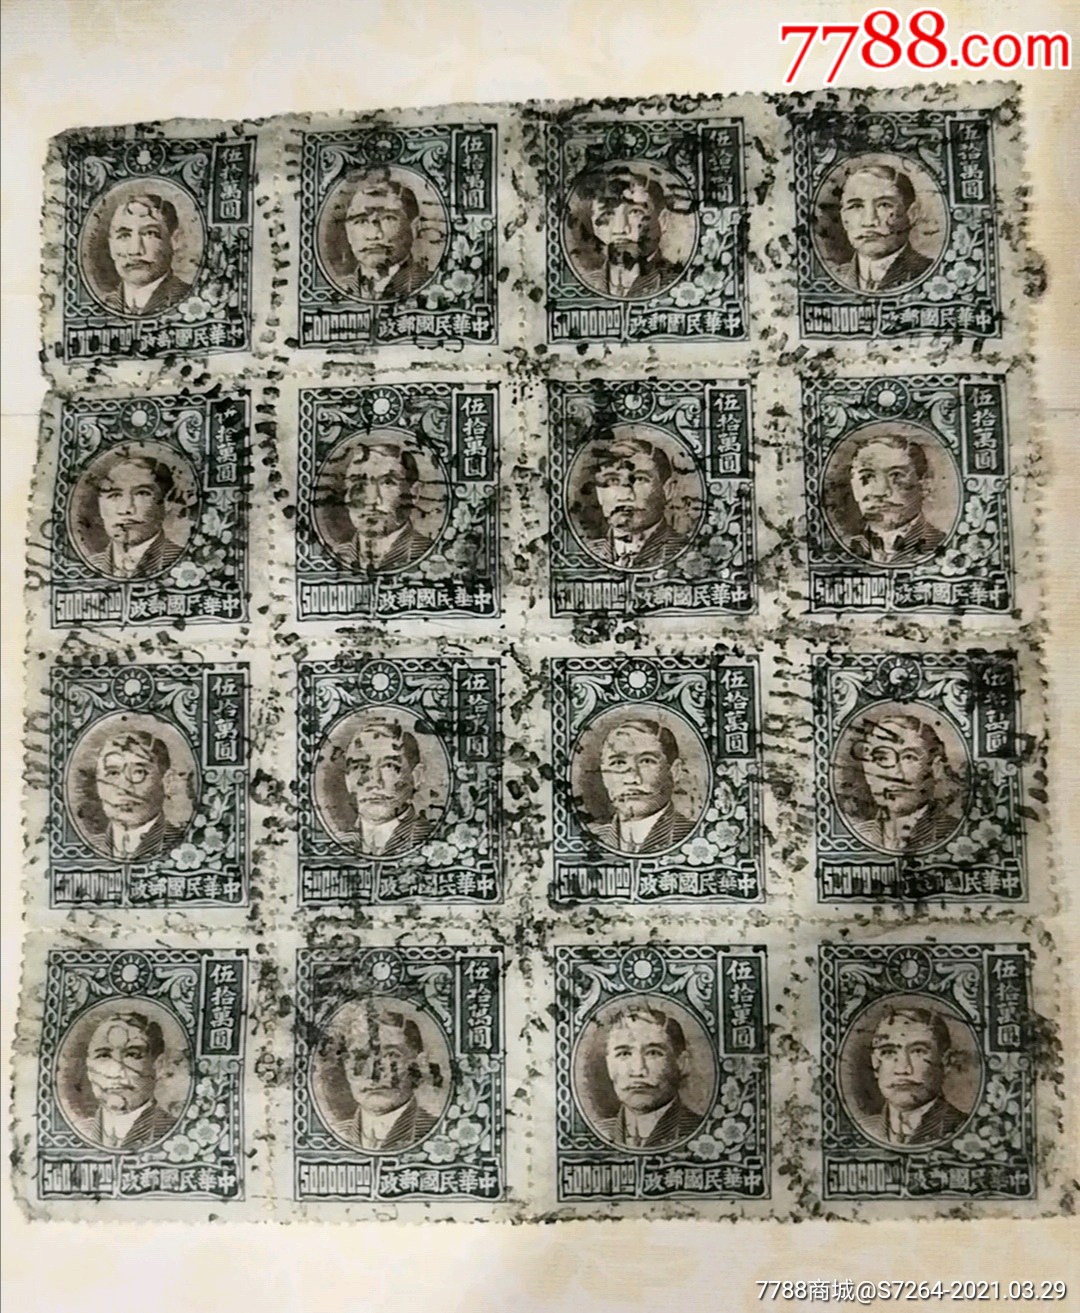 中华民国邮票,大面值,50万面值16连